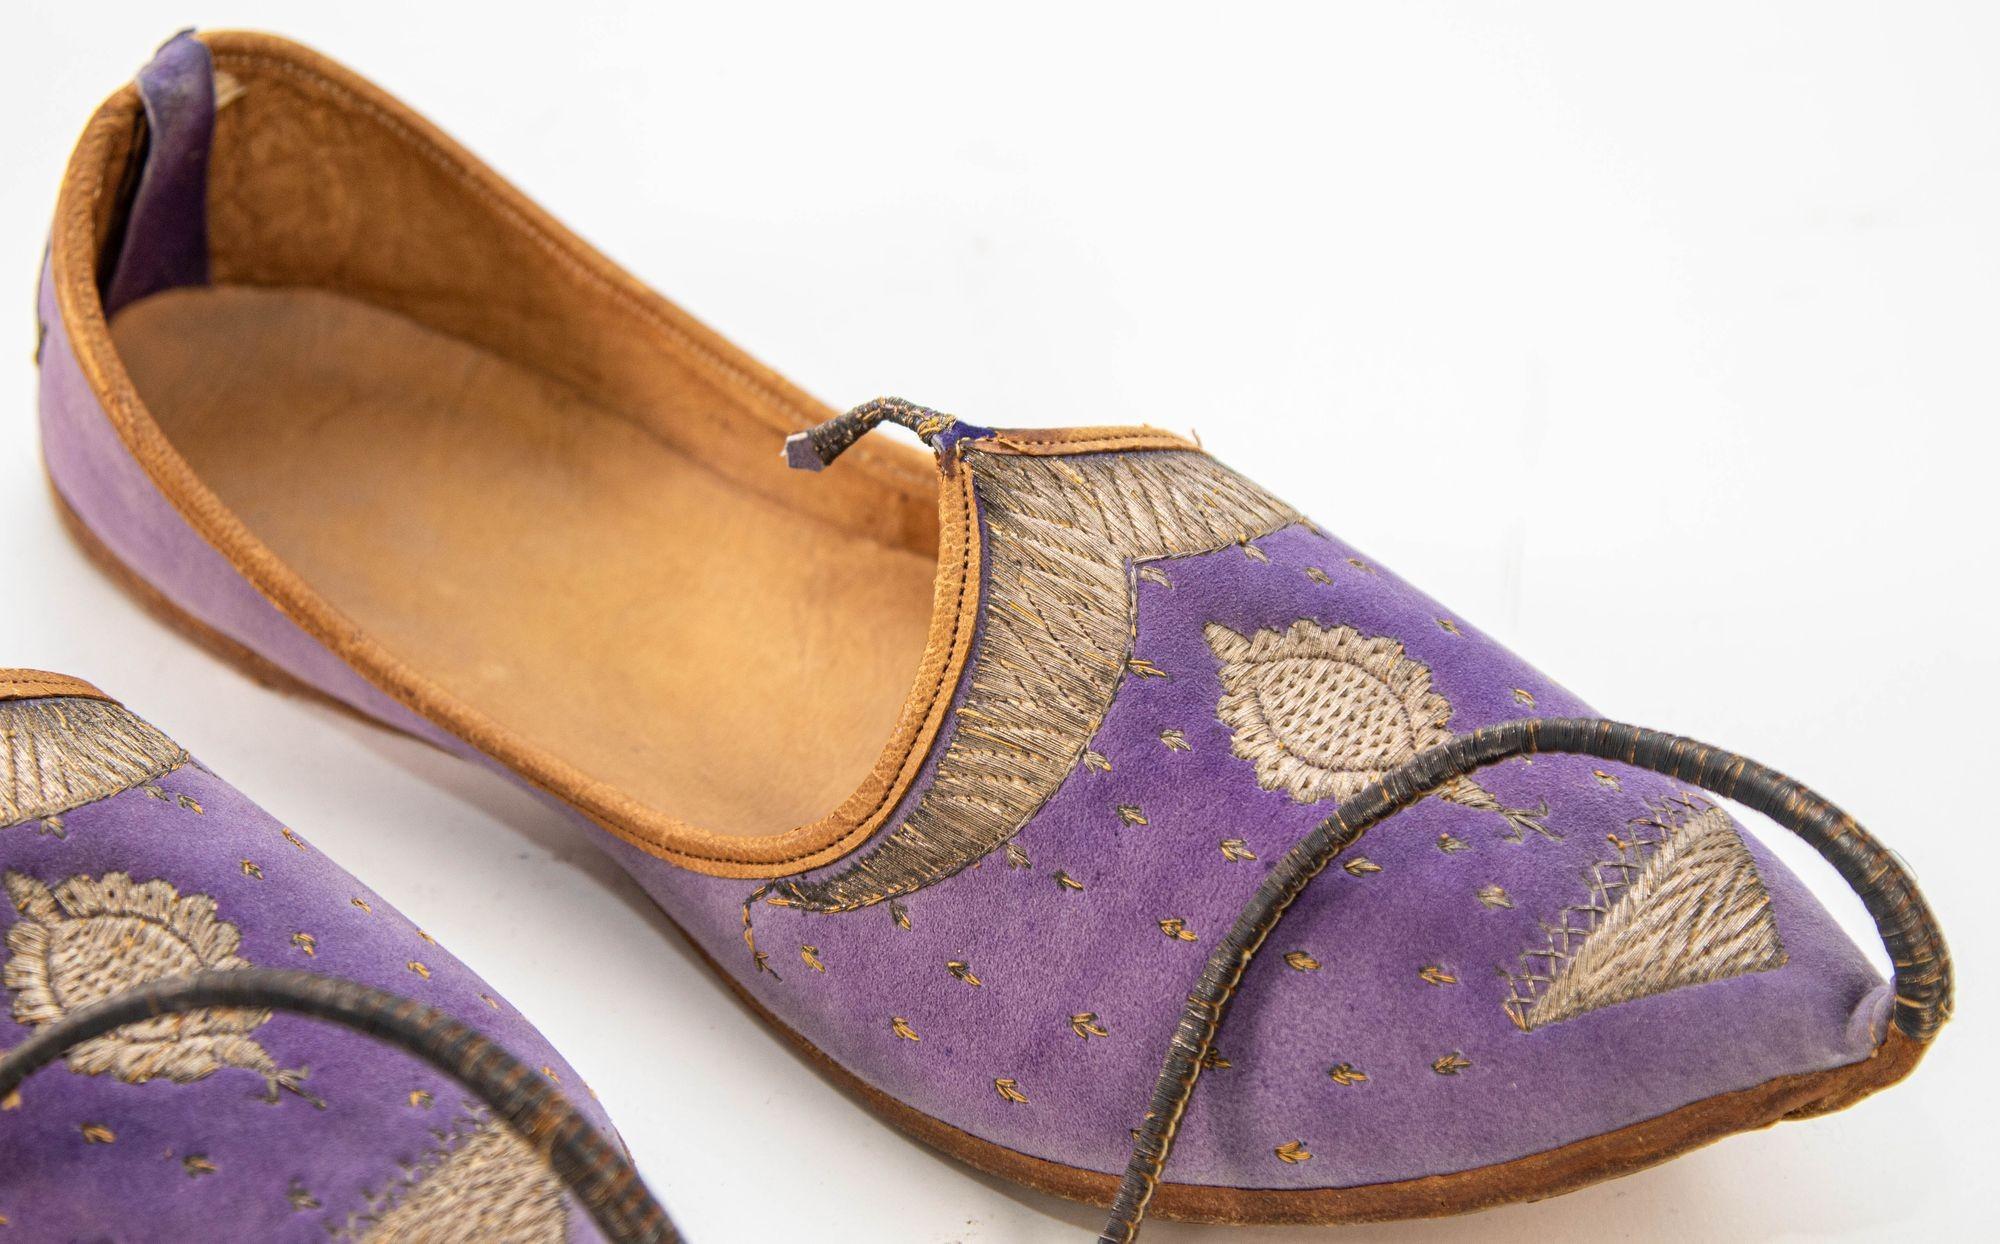 Chaussures turques antiques en cuir et daim velouté moghol avec broderies dorées.
Une paire de rares chaussures en cuir cousu et toilé à la main à la fin du 19e siècle et au début du 20e siècle, brodées à la main avec des fils métalliques